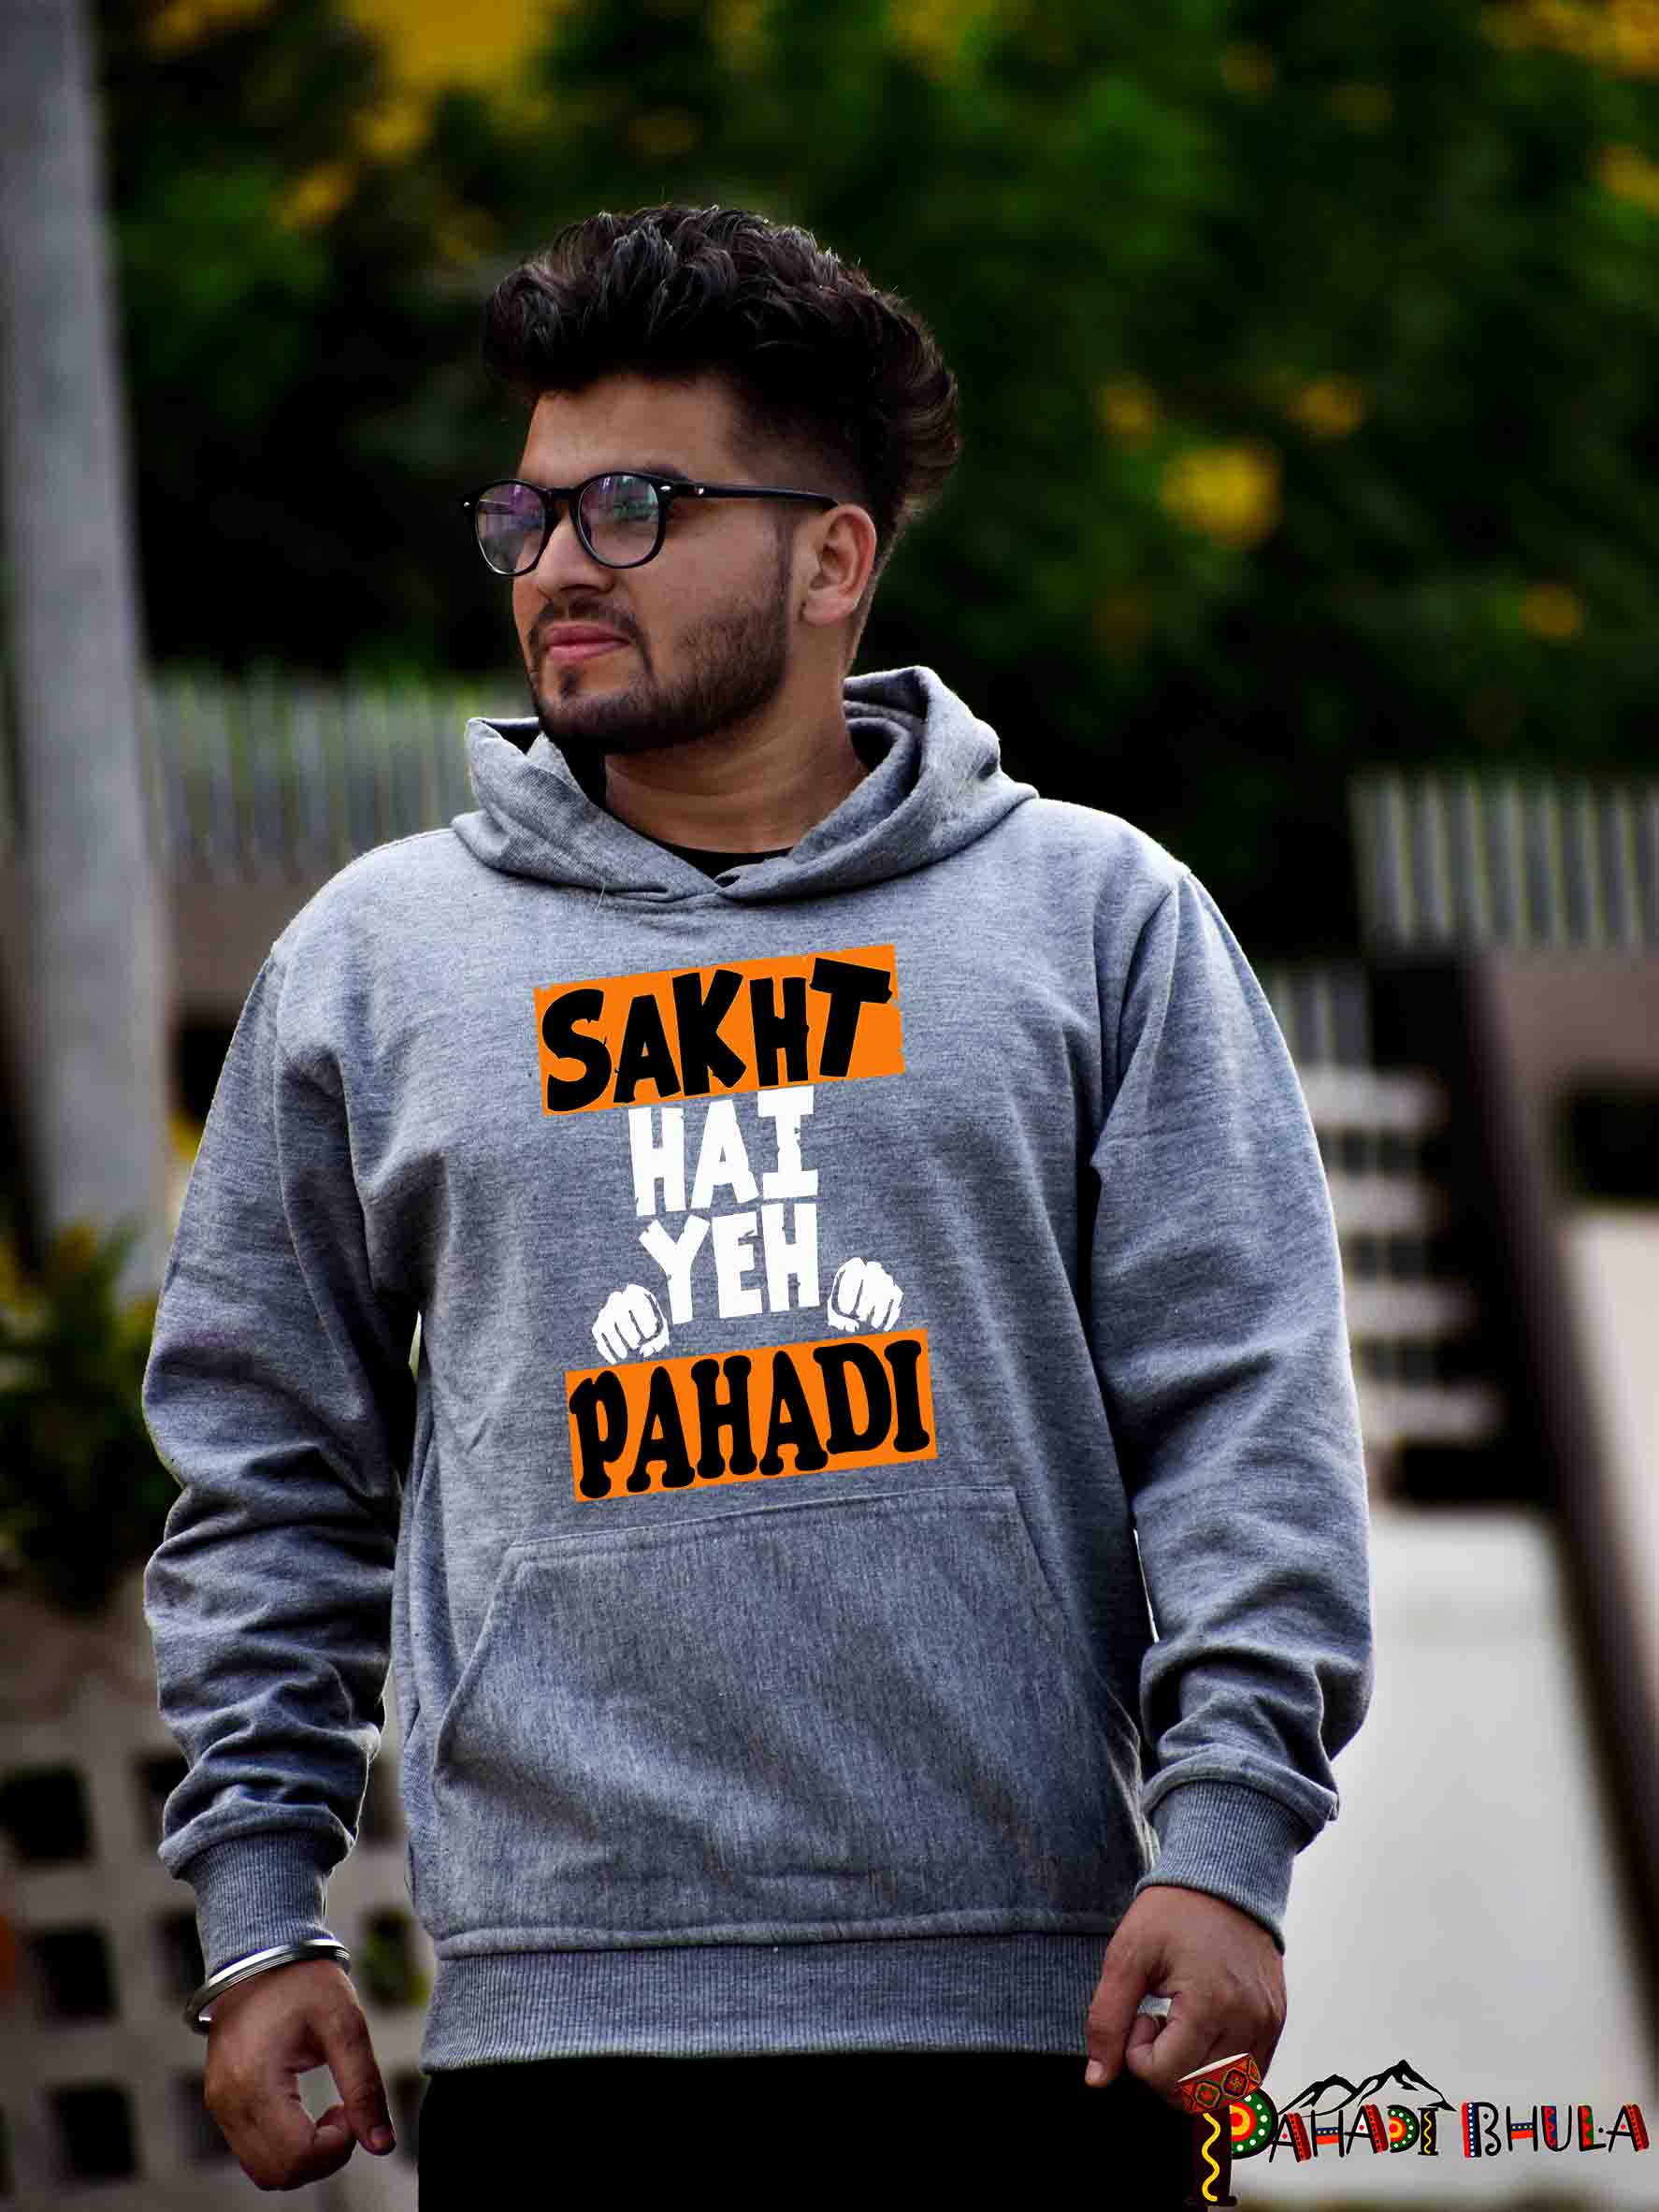 Sakht hai ye pahadi hoodie with cap